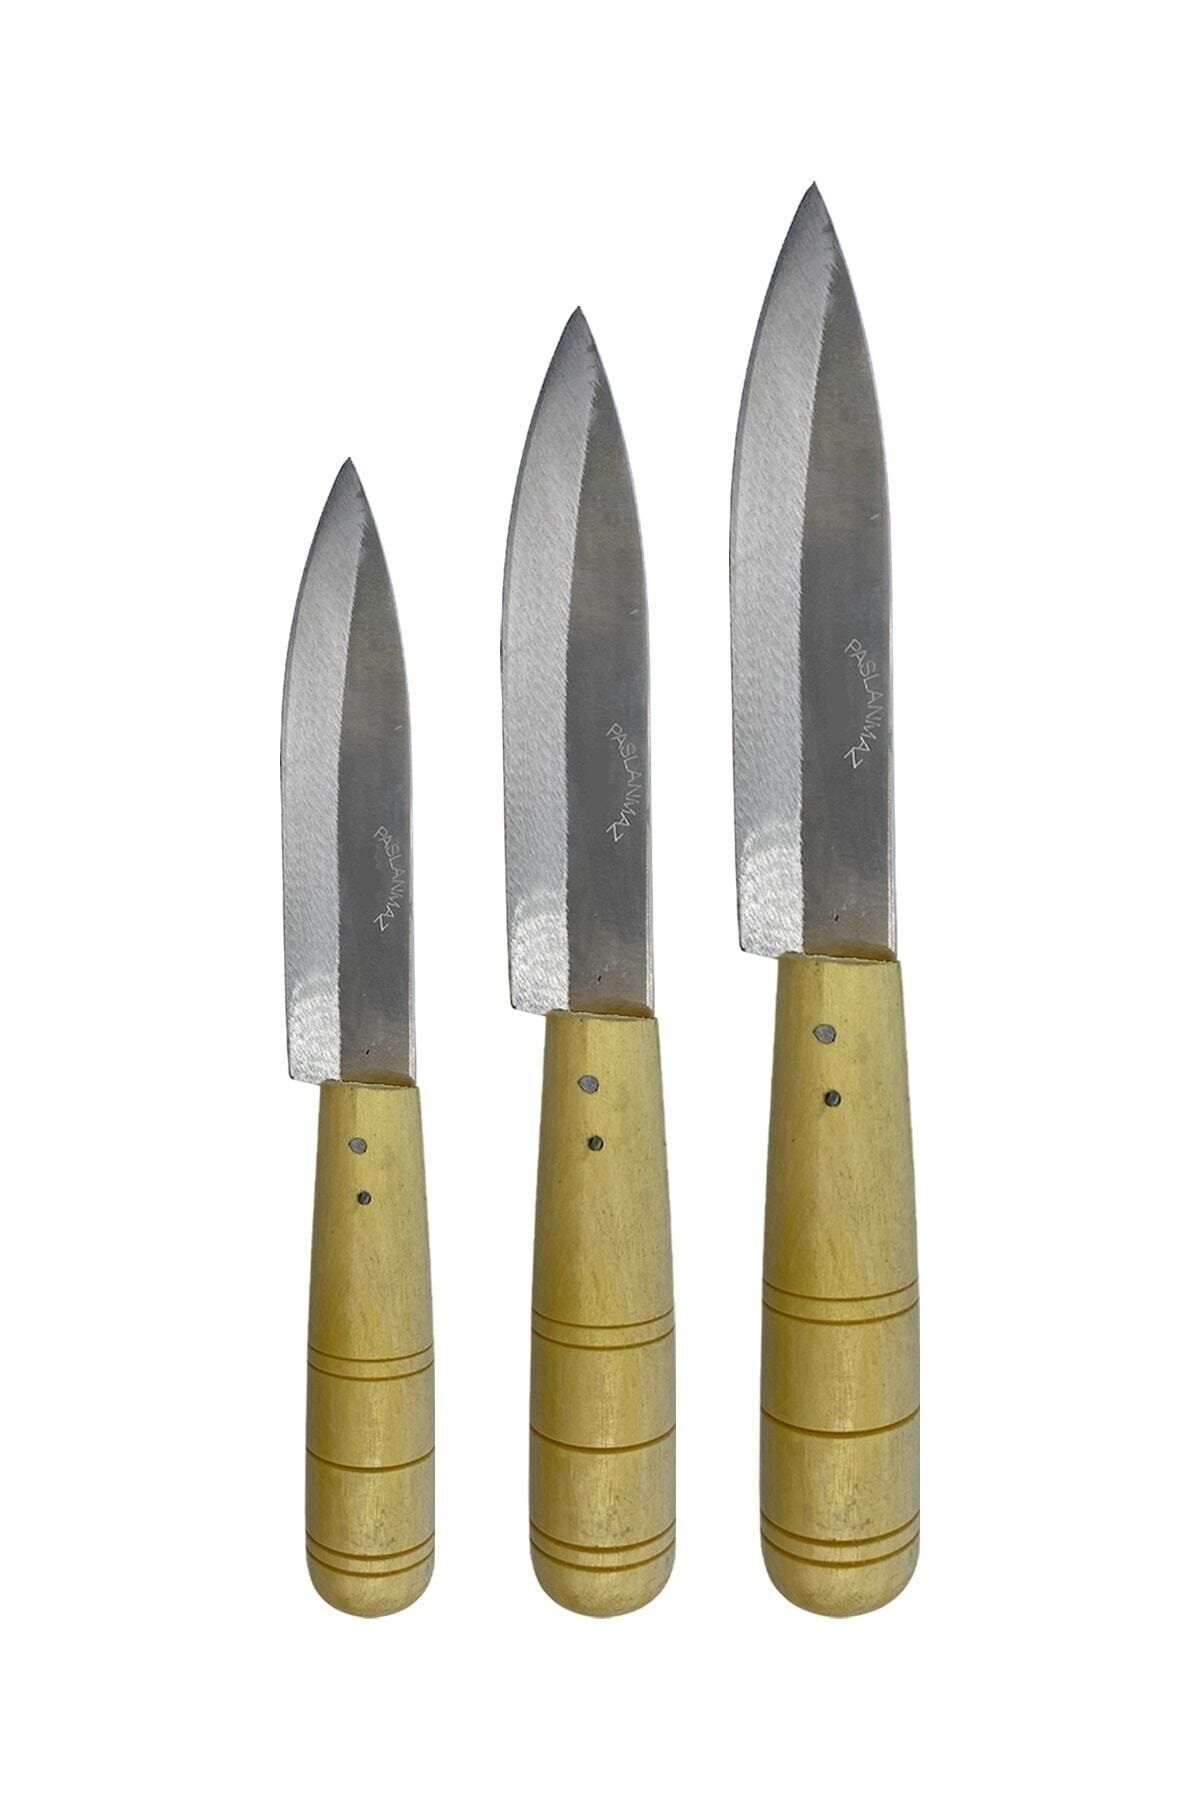 GÜZELYÜZ AVM Antakya Bıçağı Naim Bıçak Ahşap Saplı Mutfak Bıçağı 18cm/22cm/26cm 3 Adet Set Keskin Kalite 1.sınıf